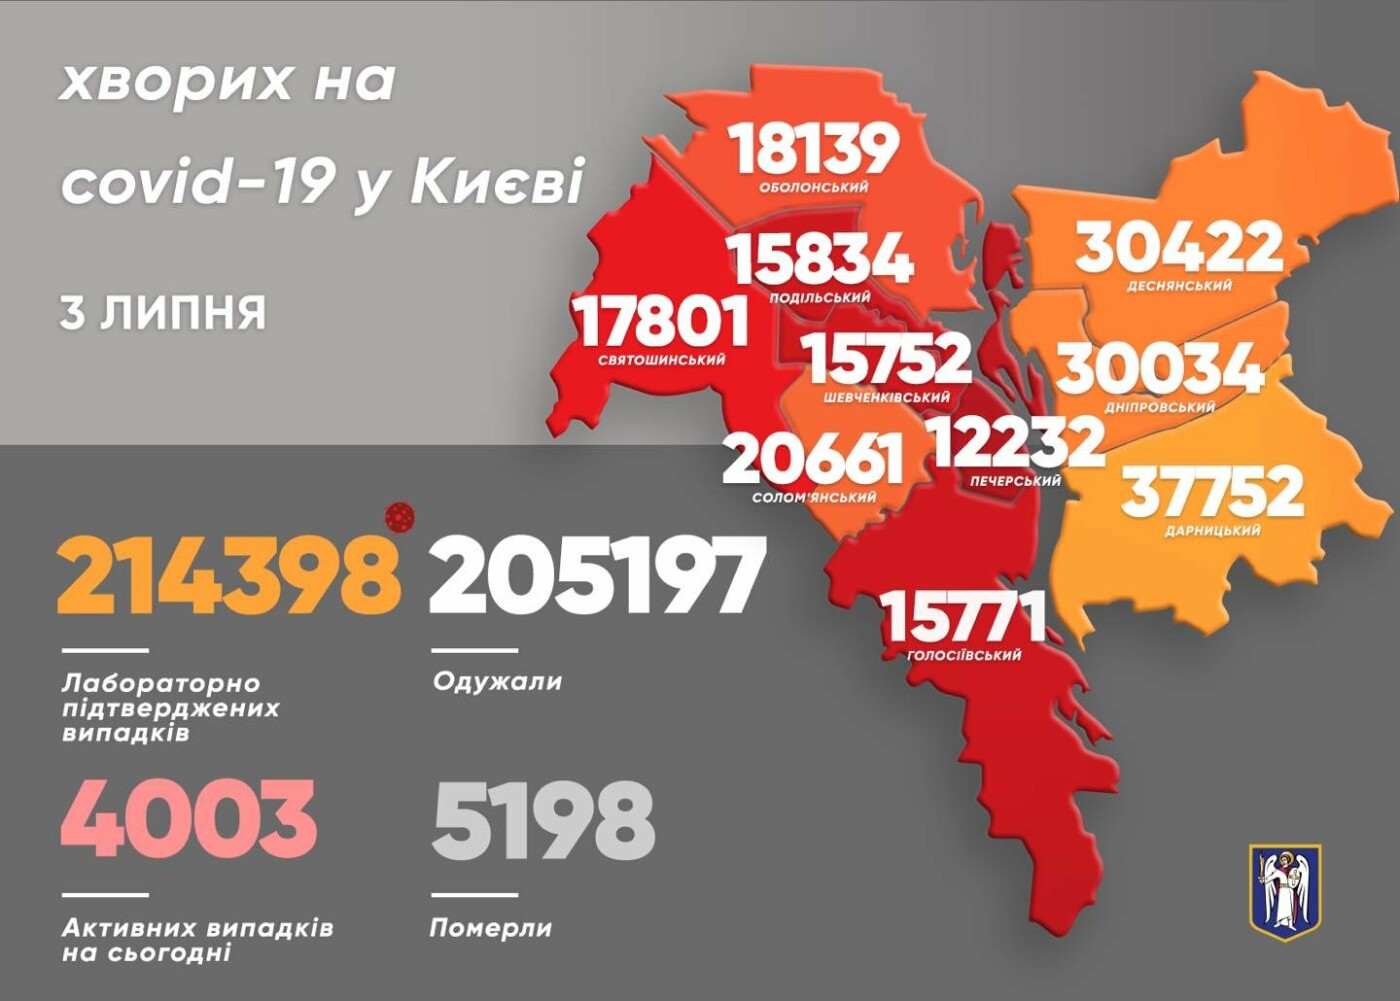 Коронавирус в Киеве: появилась статистика новых случаев COVID-19 по районам на 3 июля